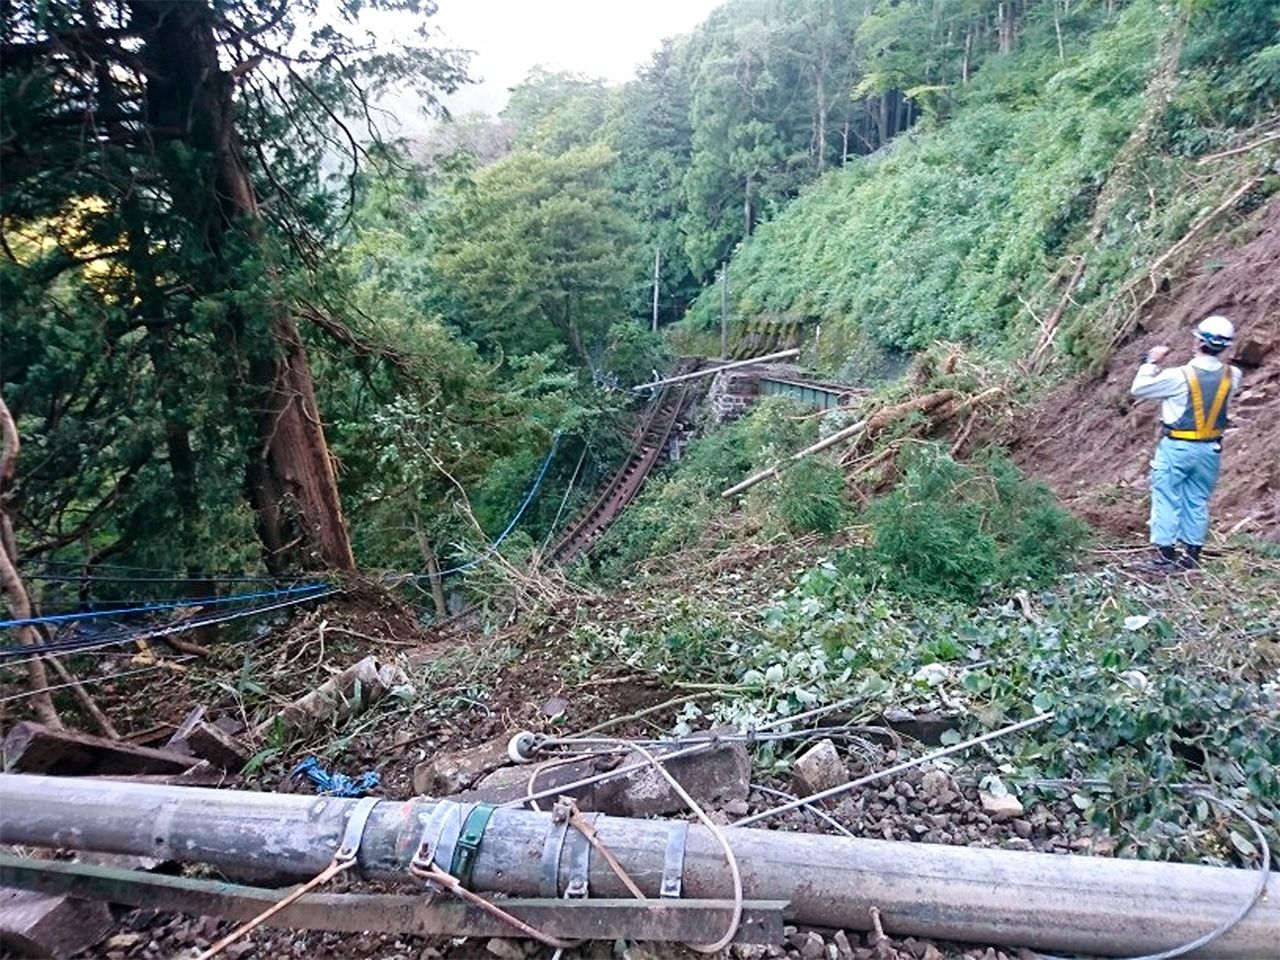 حطام متناثر على امتداد مسار سكة حديد هاكوني توزان التي دمرها انهيار أرضي في أكتوبر/ تشرين الأول 2019 الصورة بإذن من سكة حديد هاكوني توزان، جيجي برس.